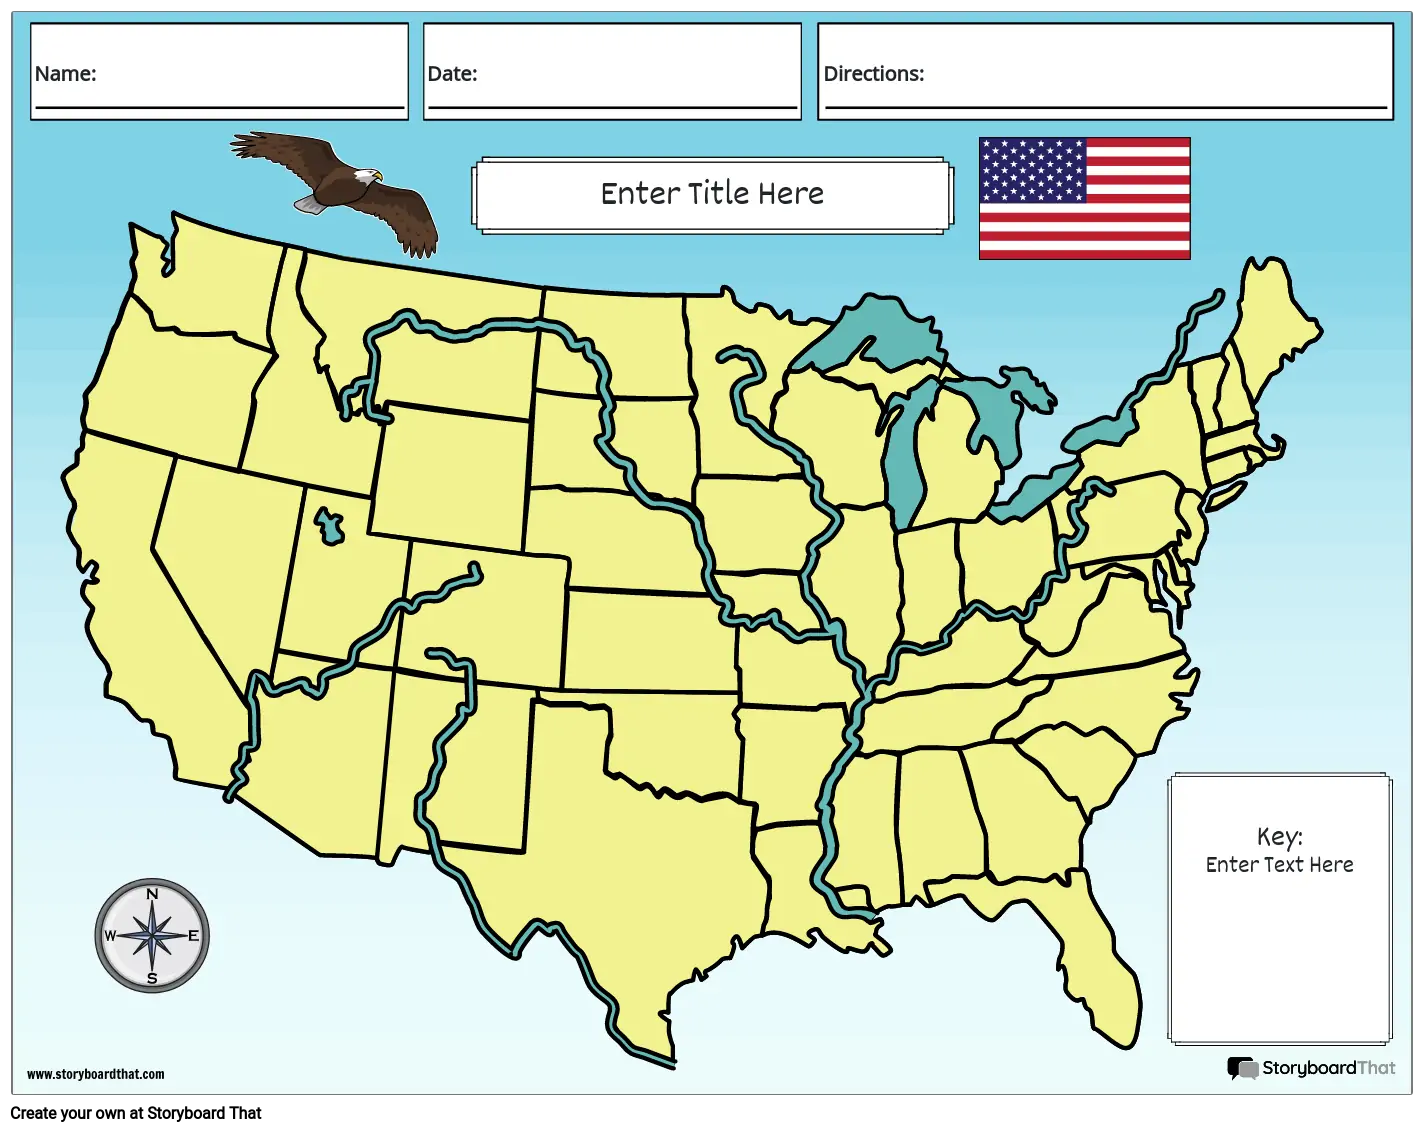 Fizička Geografija SAD-a